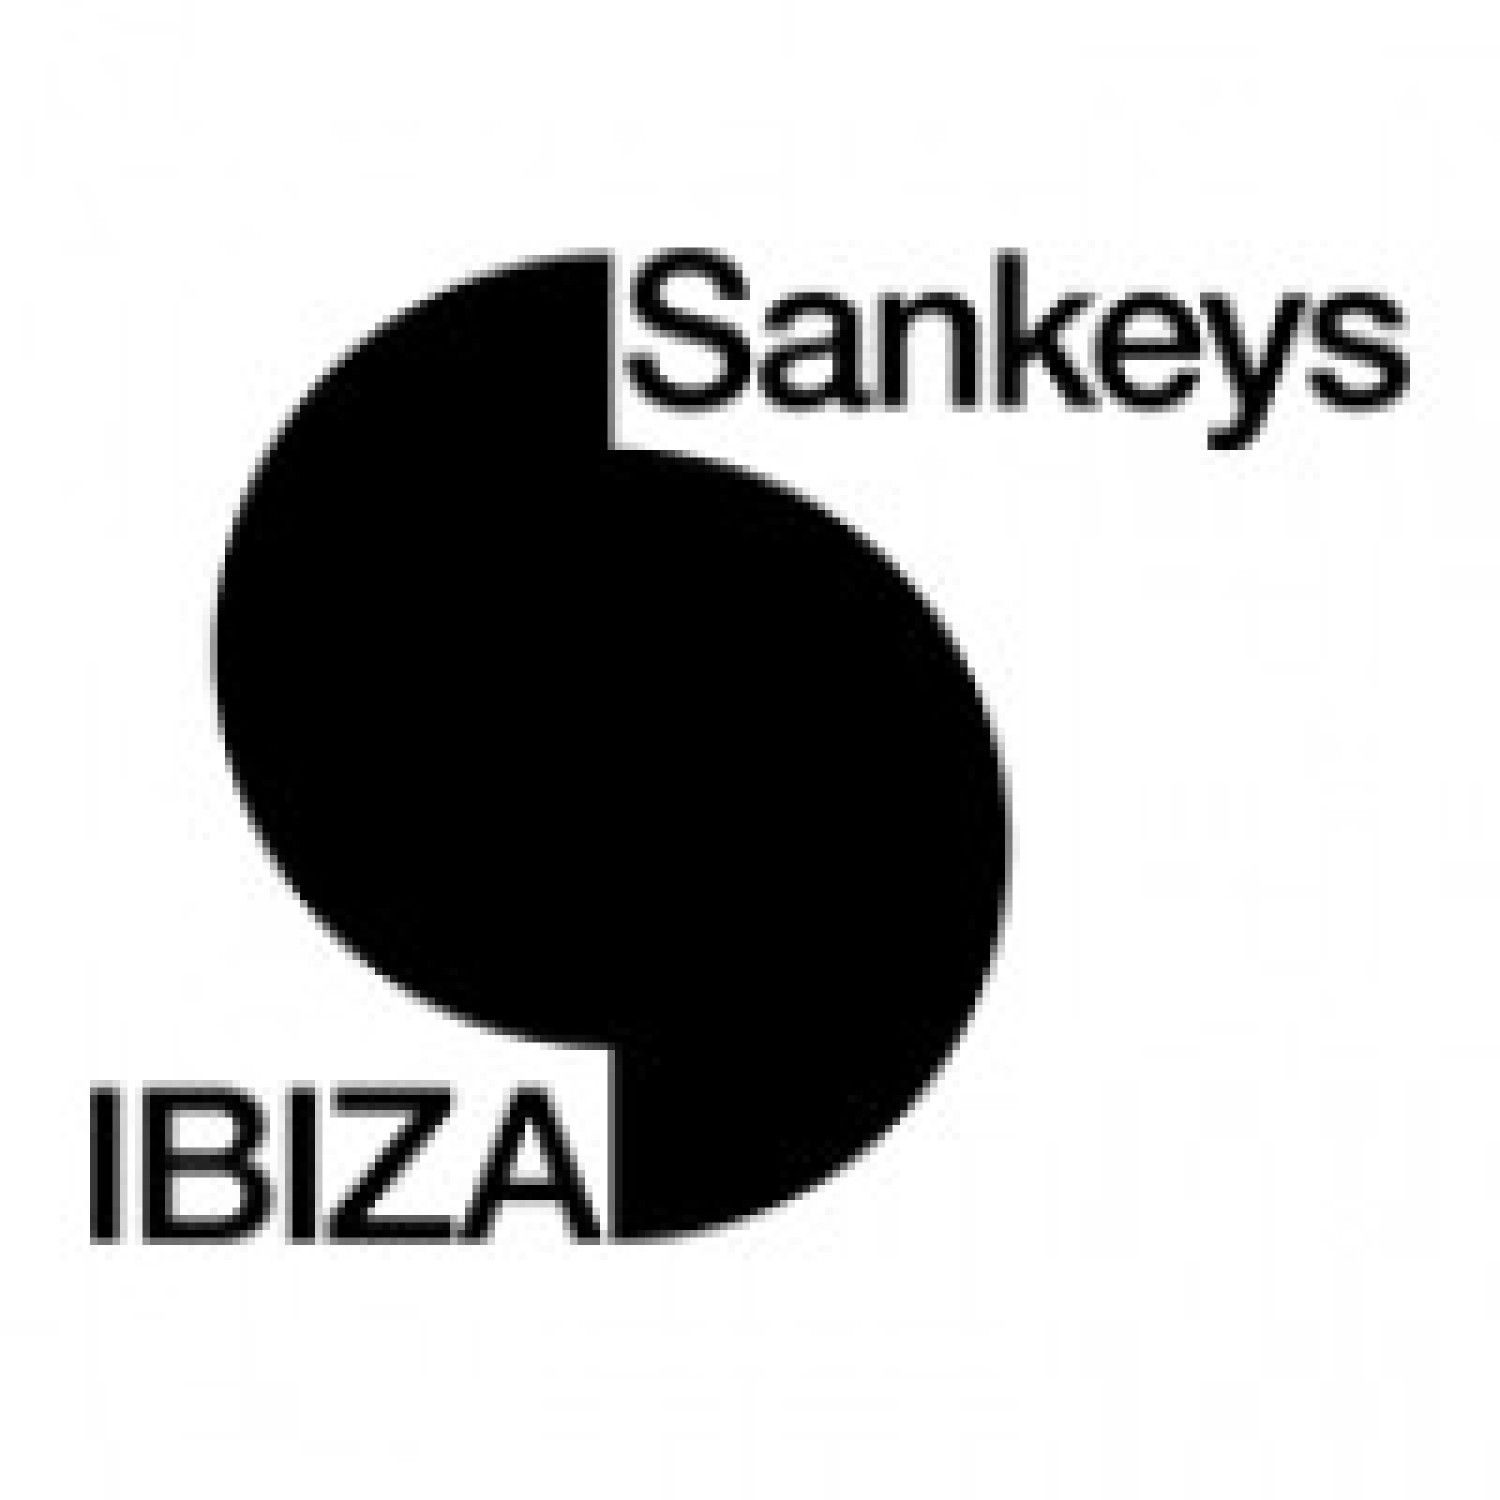 Sankeys Ibiza